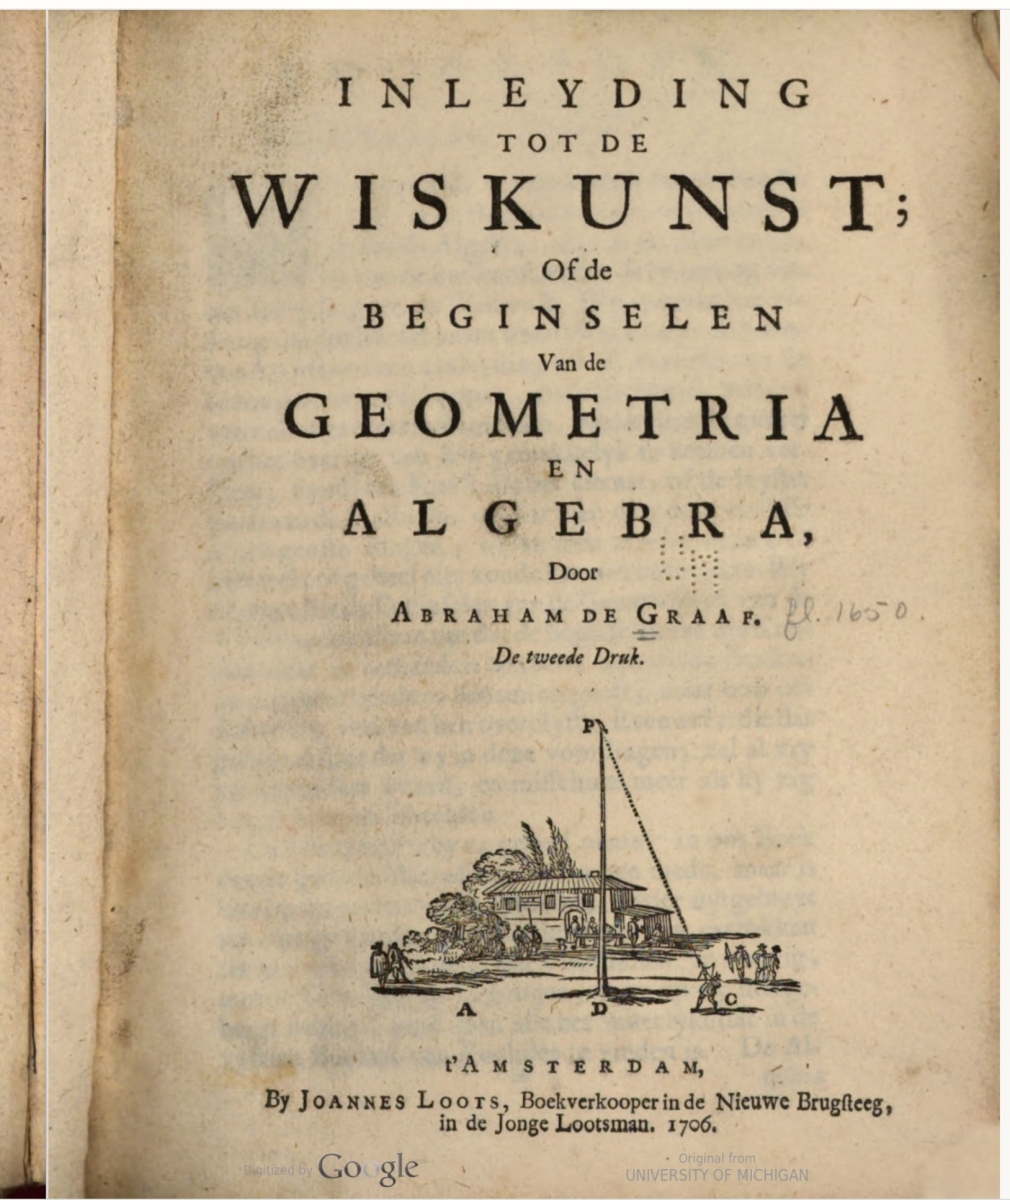 Title page of Abraham de Graaf's Inleyding tot de wiskunst.